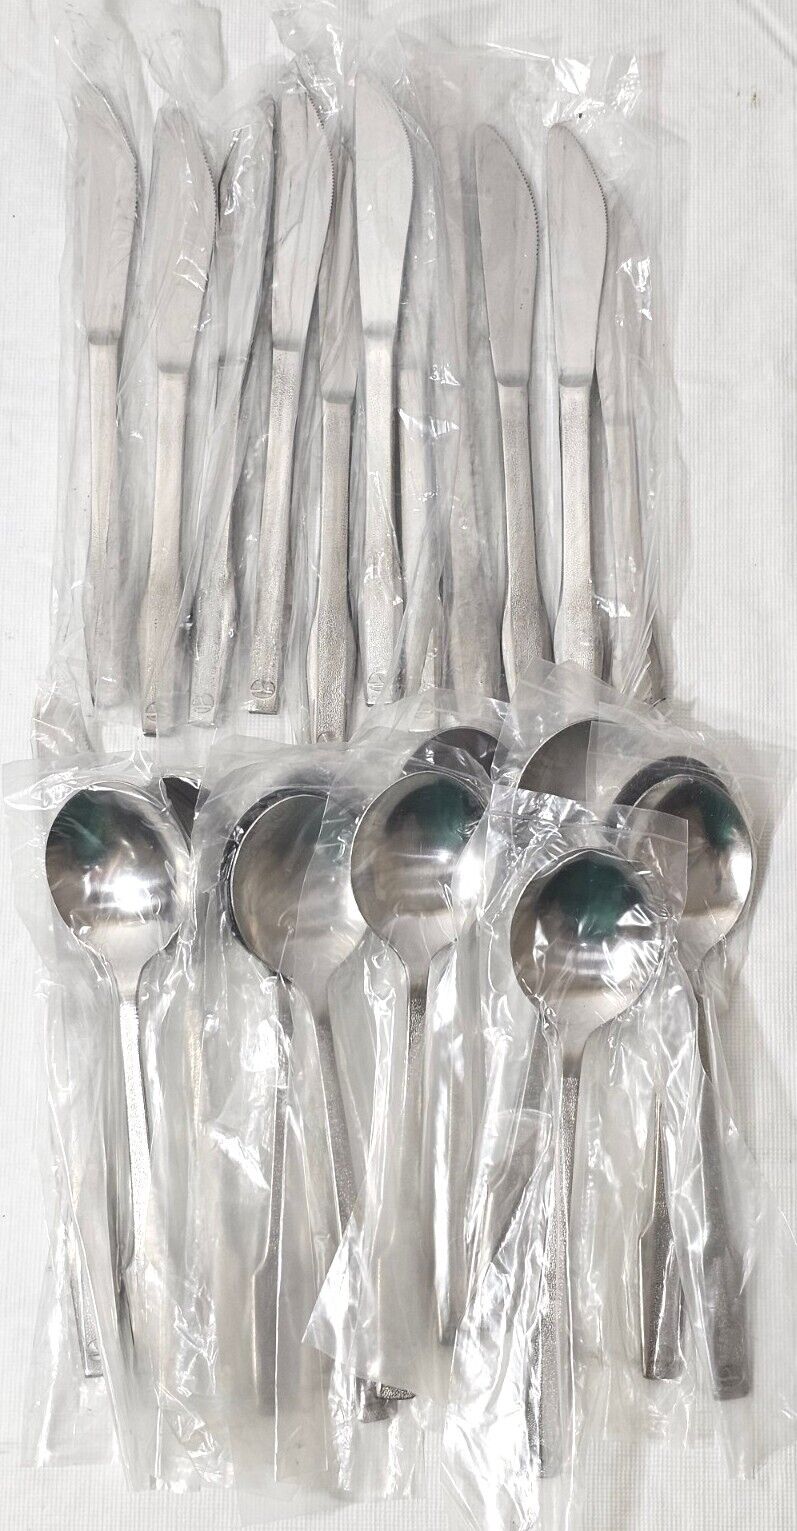 Lot of Vintage Eastern Airlines Cutlery 12 Spoons 12 Knives Silverware Utensils